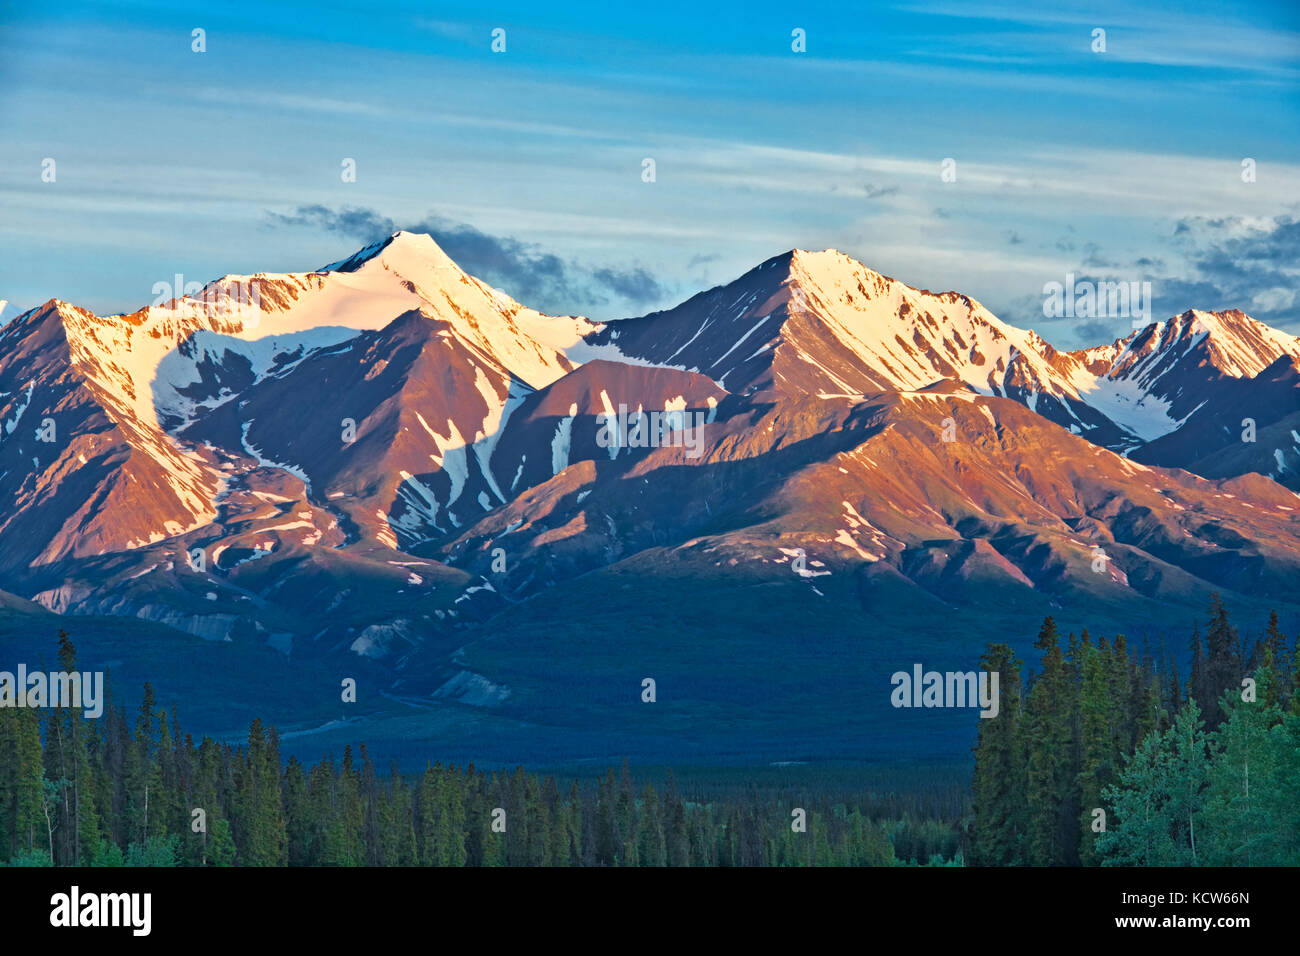 Montagnes St. Elias, un sous-groupe des chaînes de la côte du Pacifique , de Haines Junction, Yukon, Canada Banque D'Images